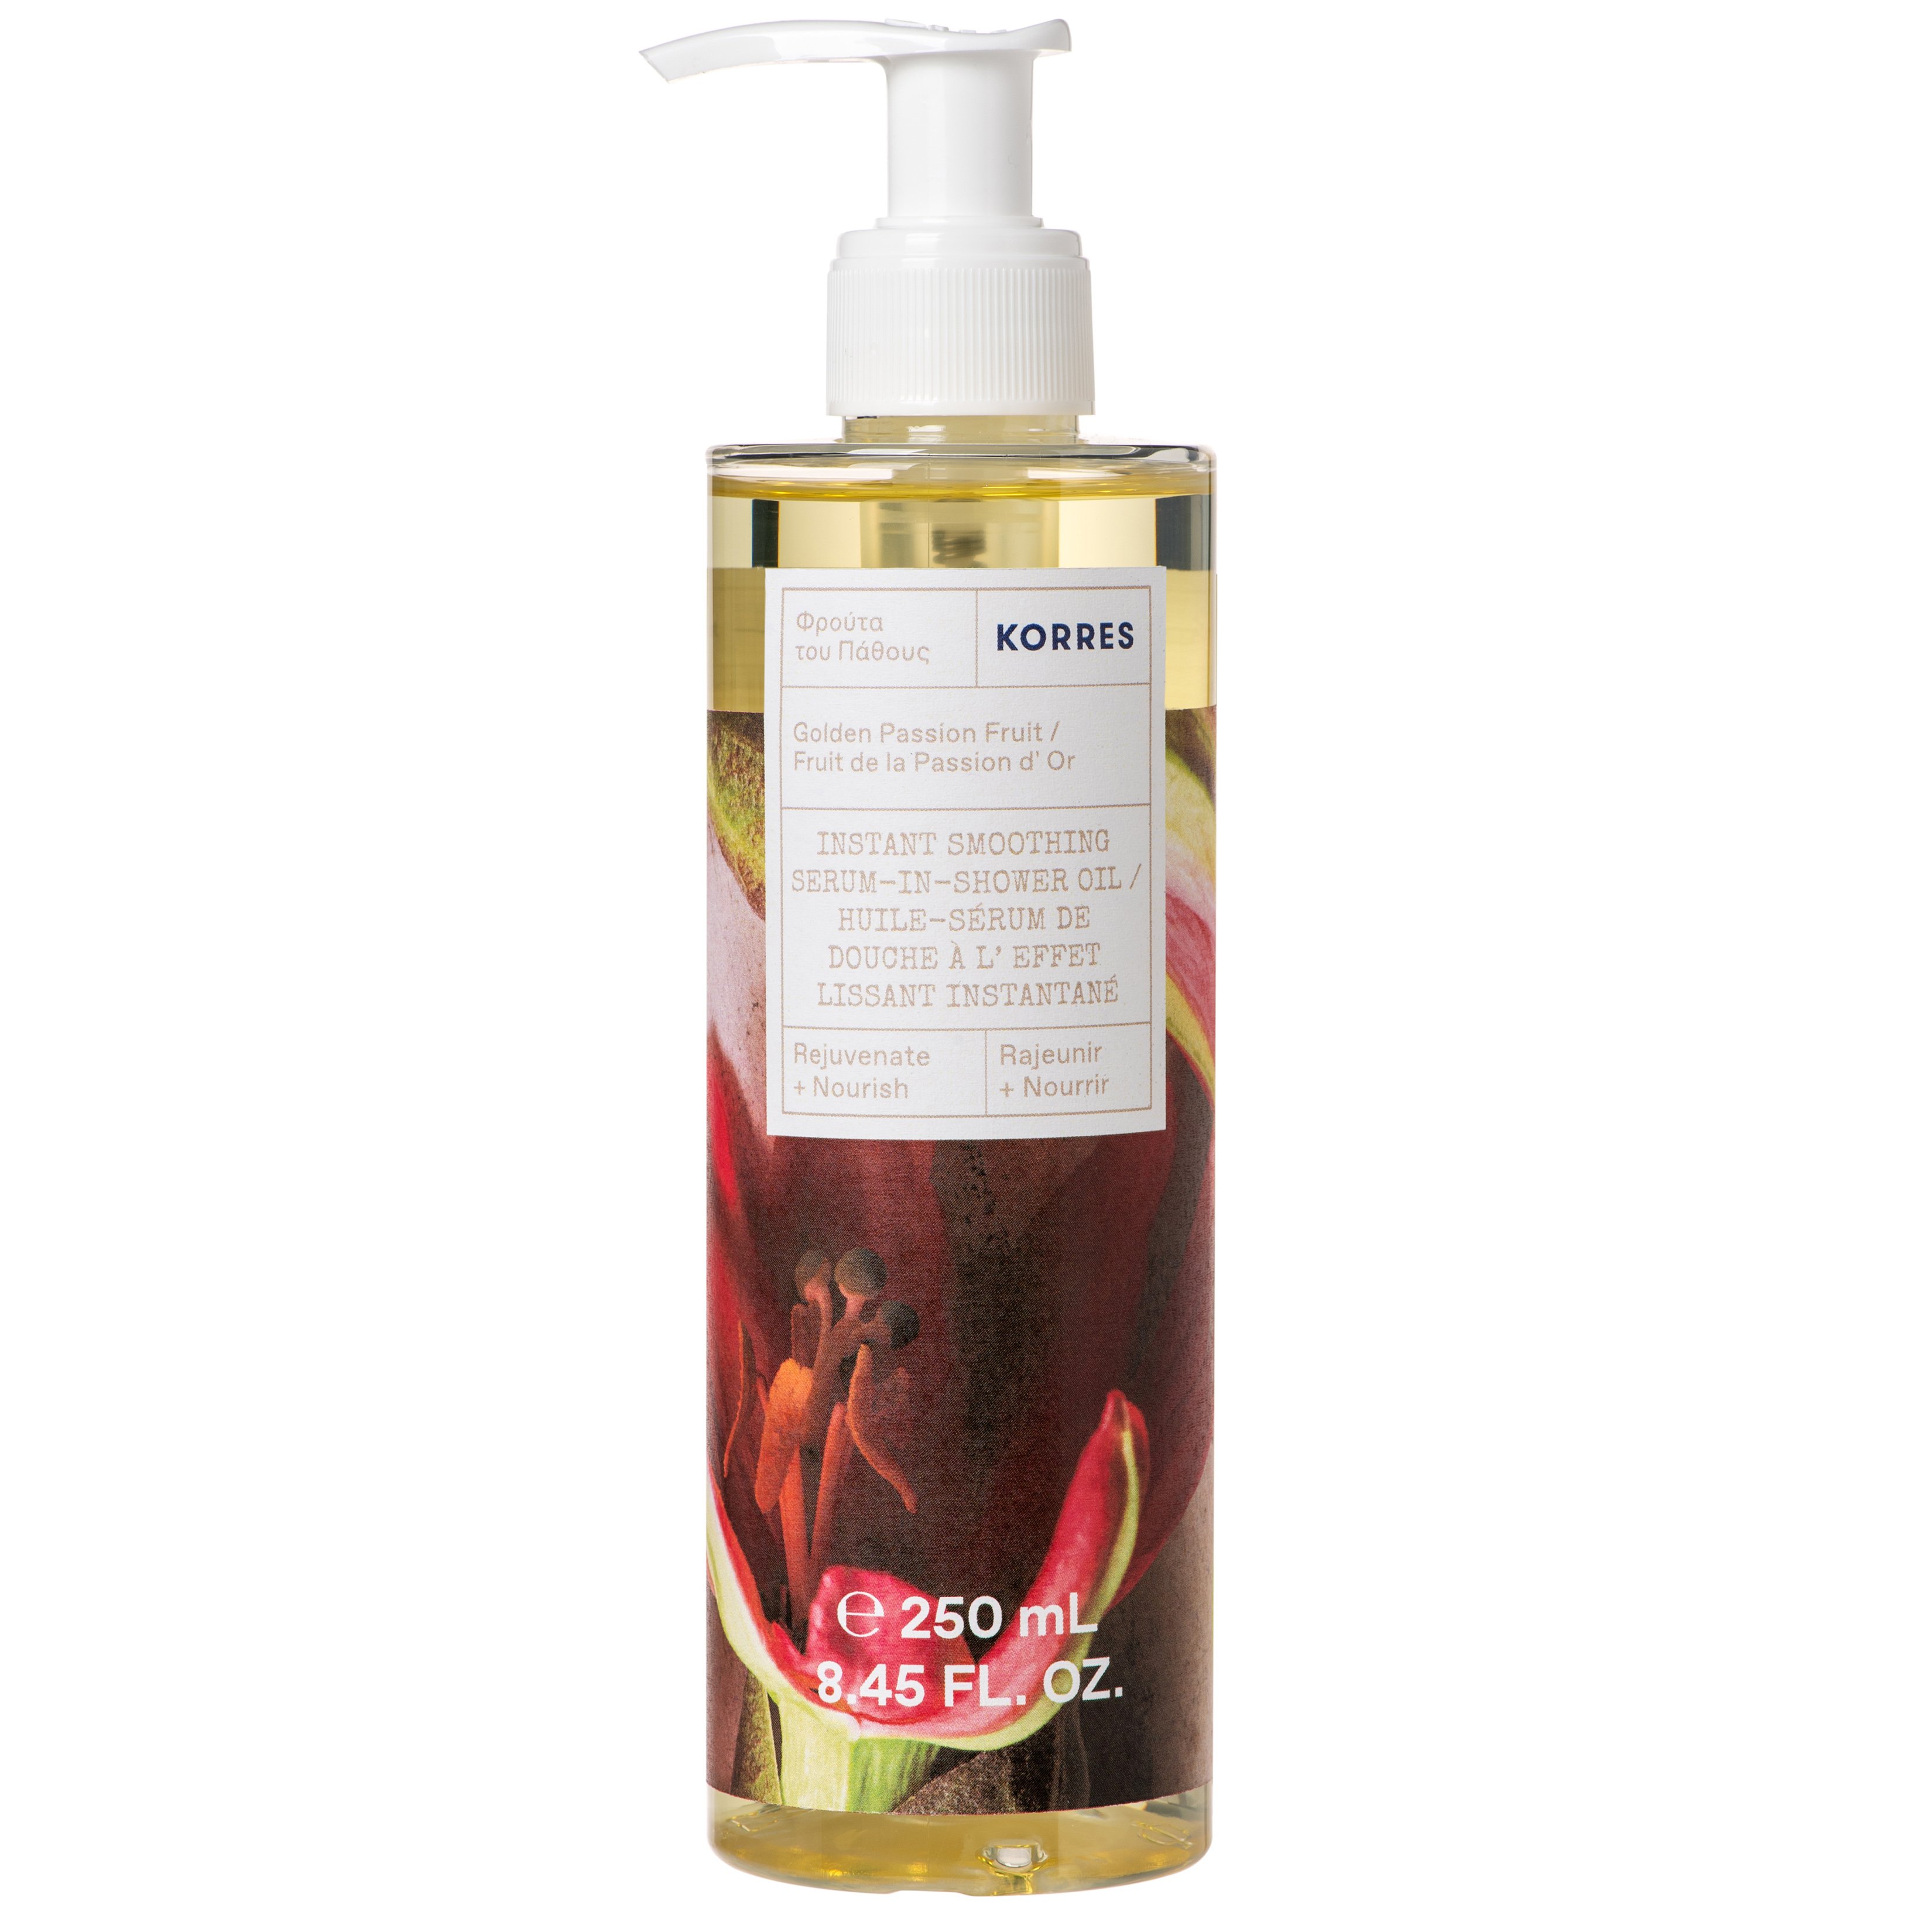 Korres Instant Smoothing Serum in Shower Oil Golden Passion Fruit Ενυδατικό Serum-Oil Σώματος για Θρέψη & Λάμψη 250ml